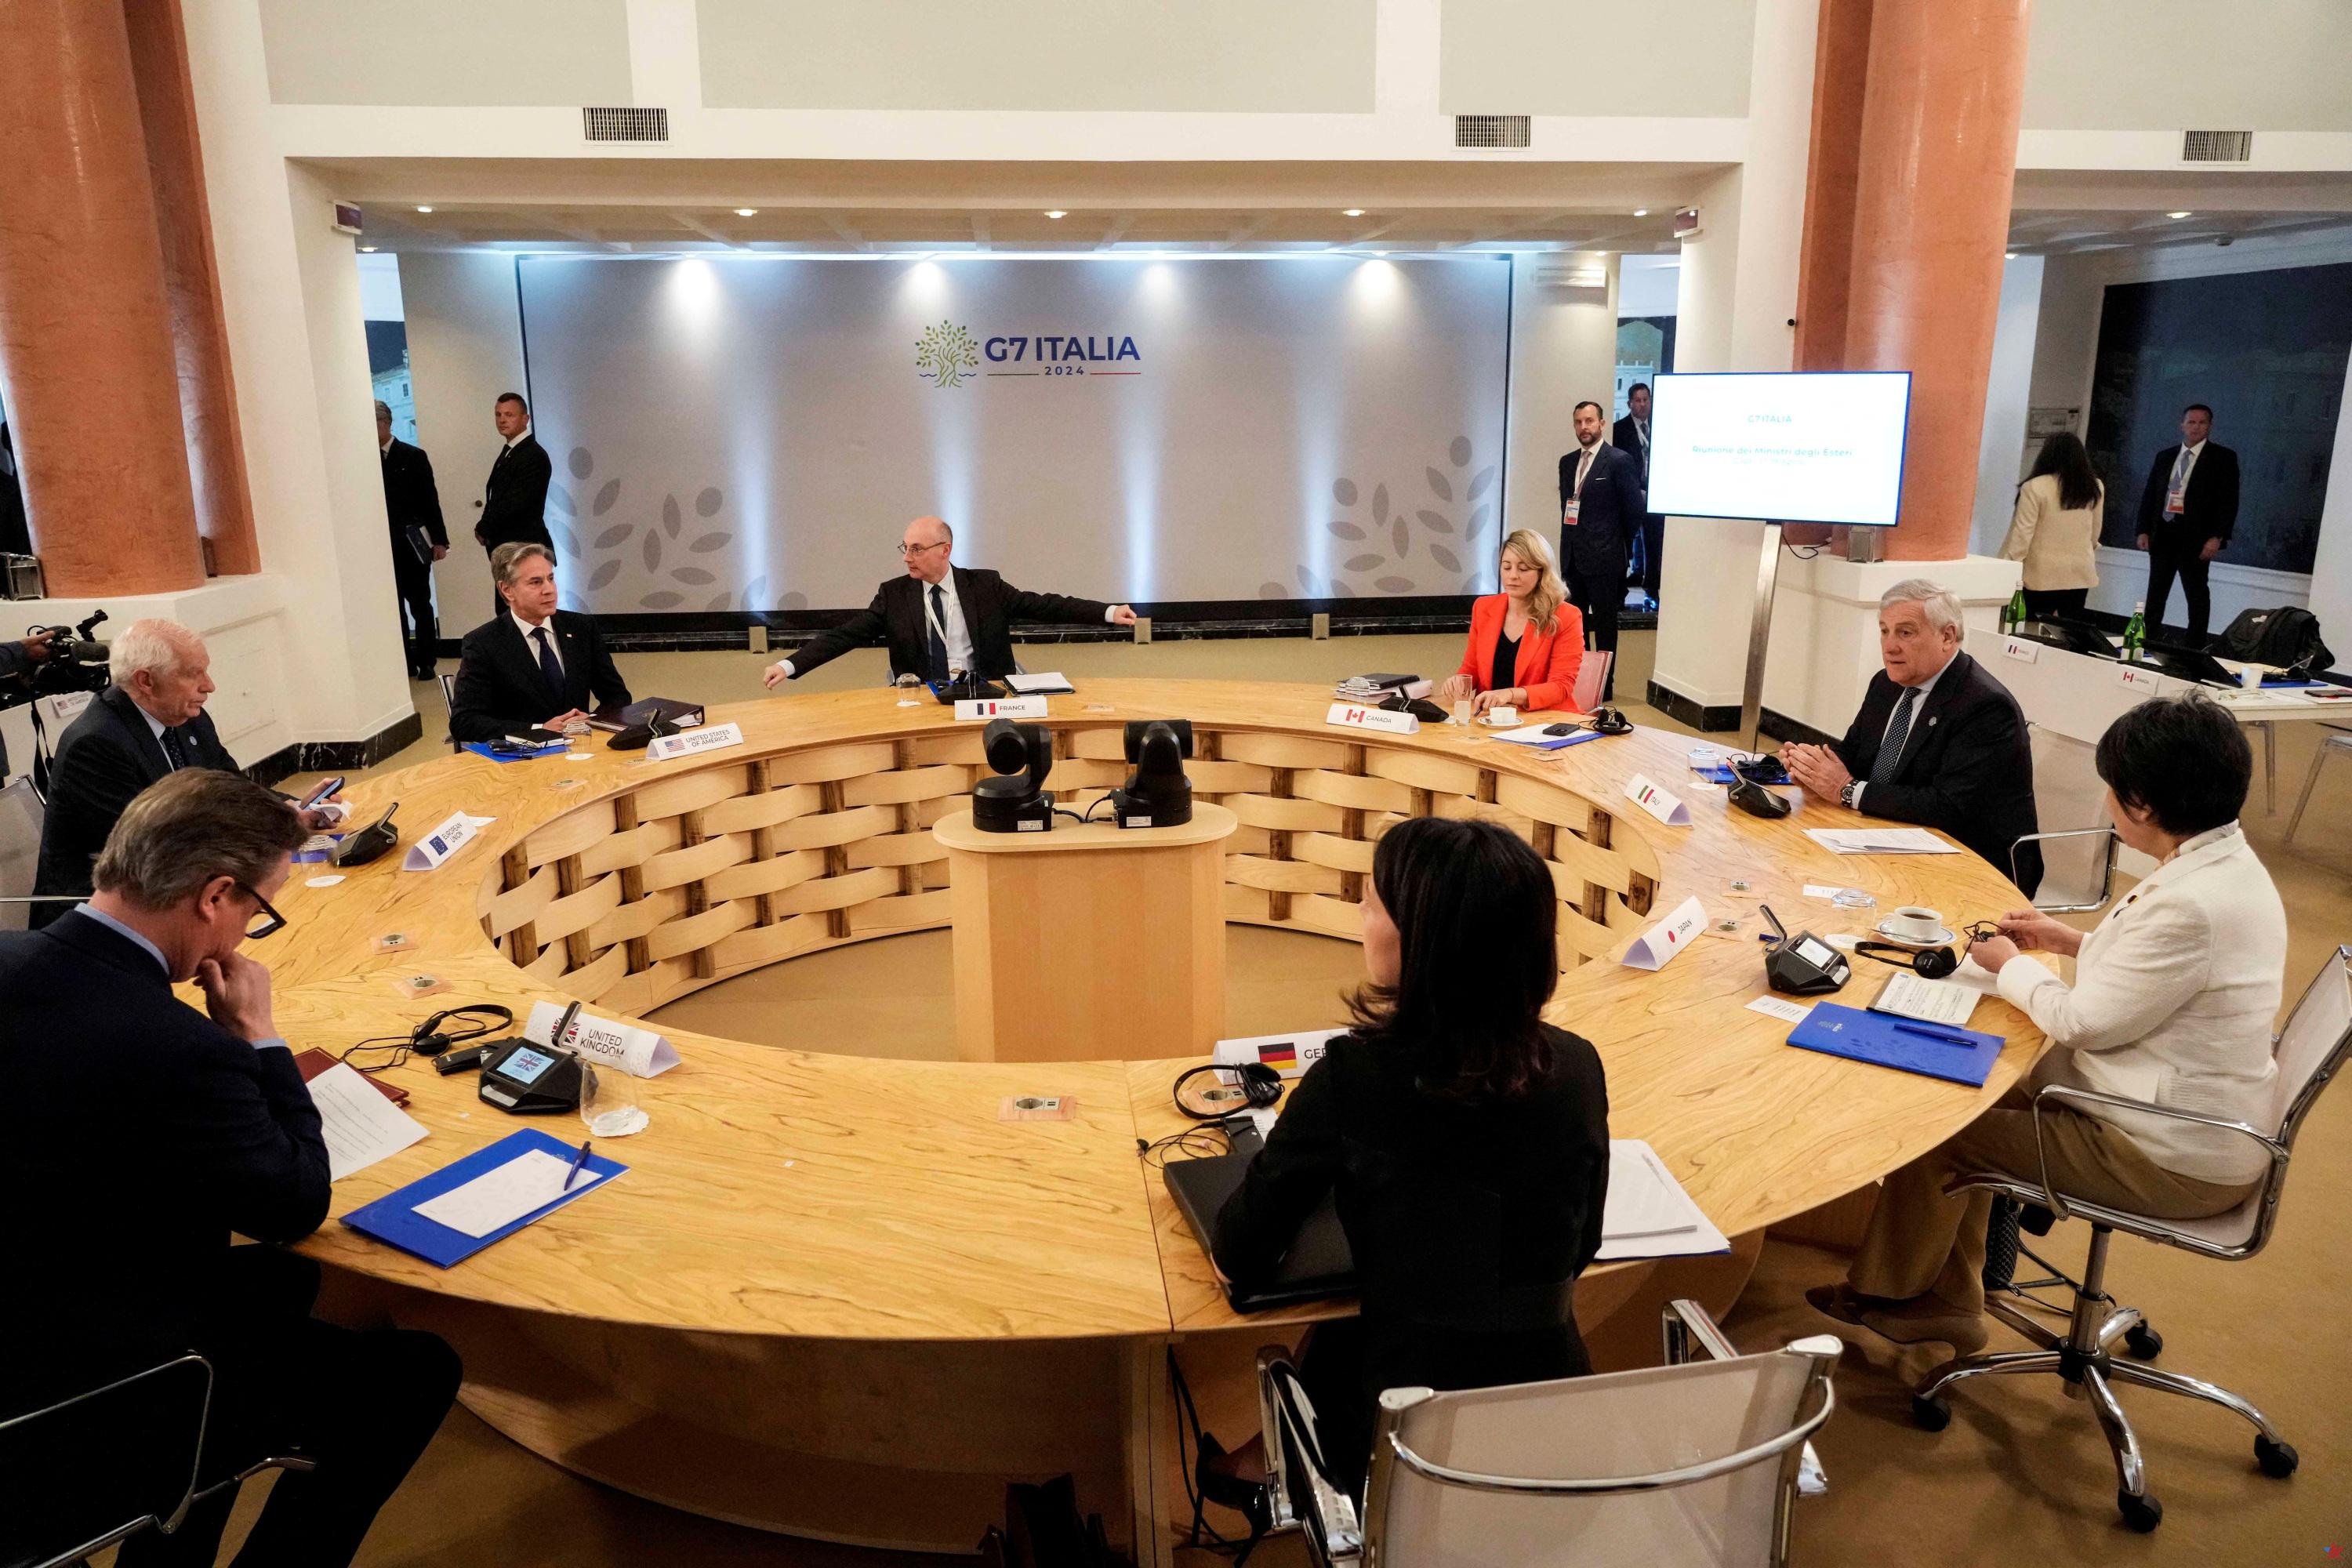 Anuncios del G7 vinculados a los conflictos en Oriente Medio y Ucrania